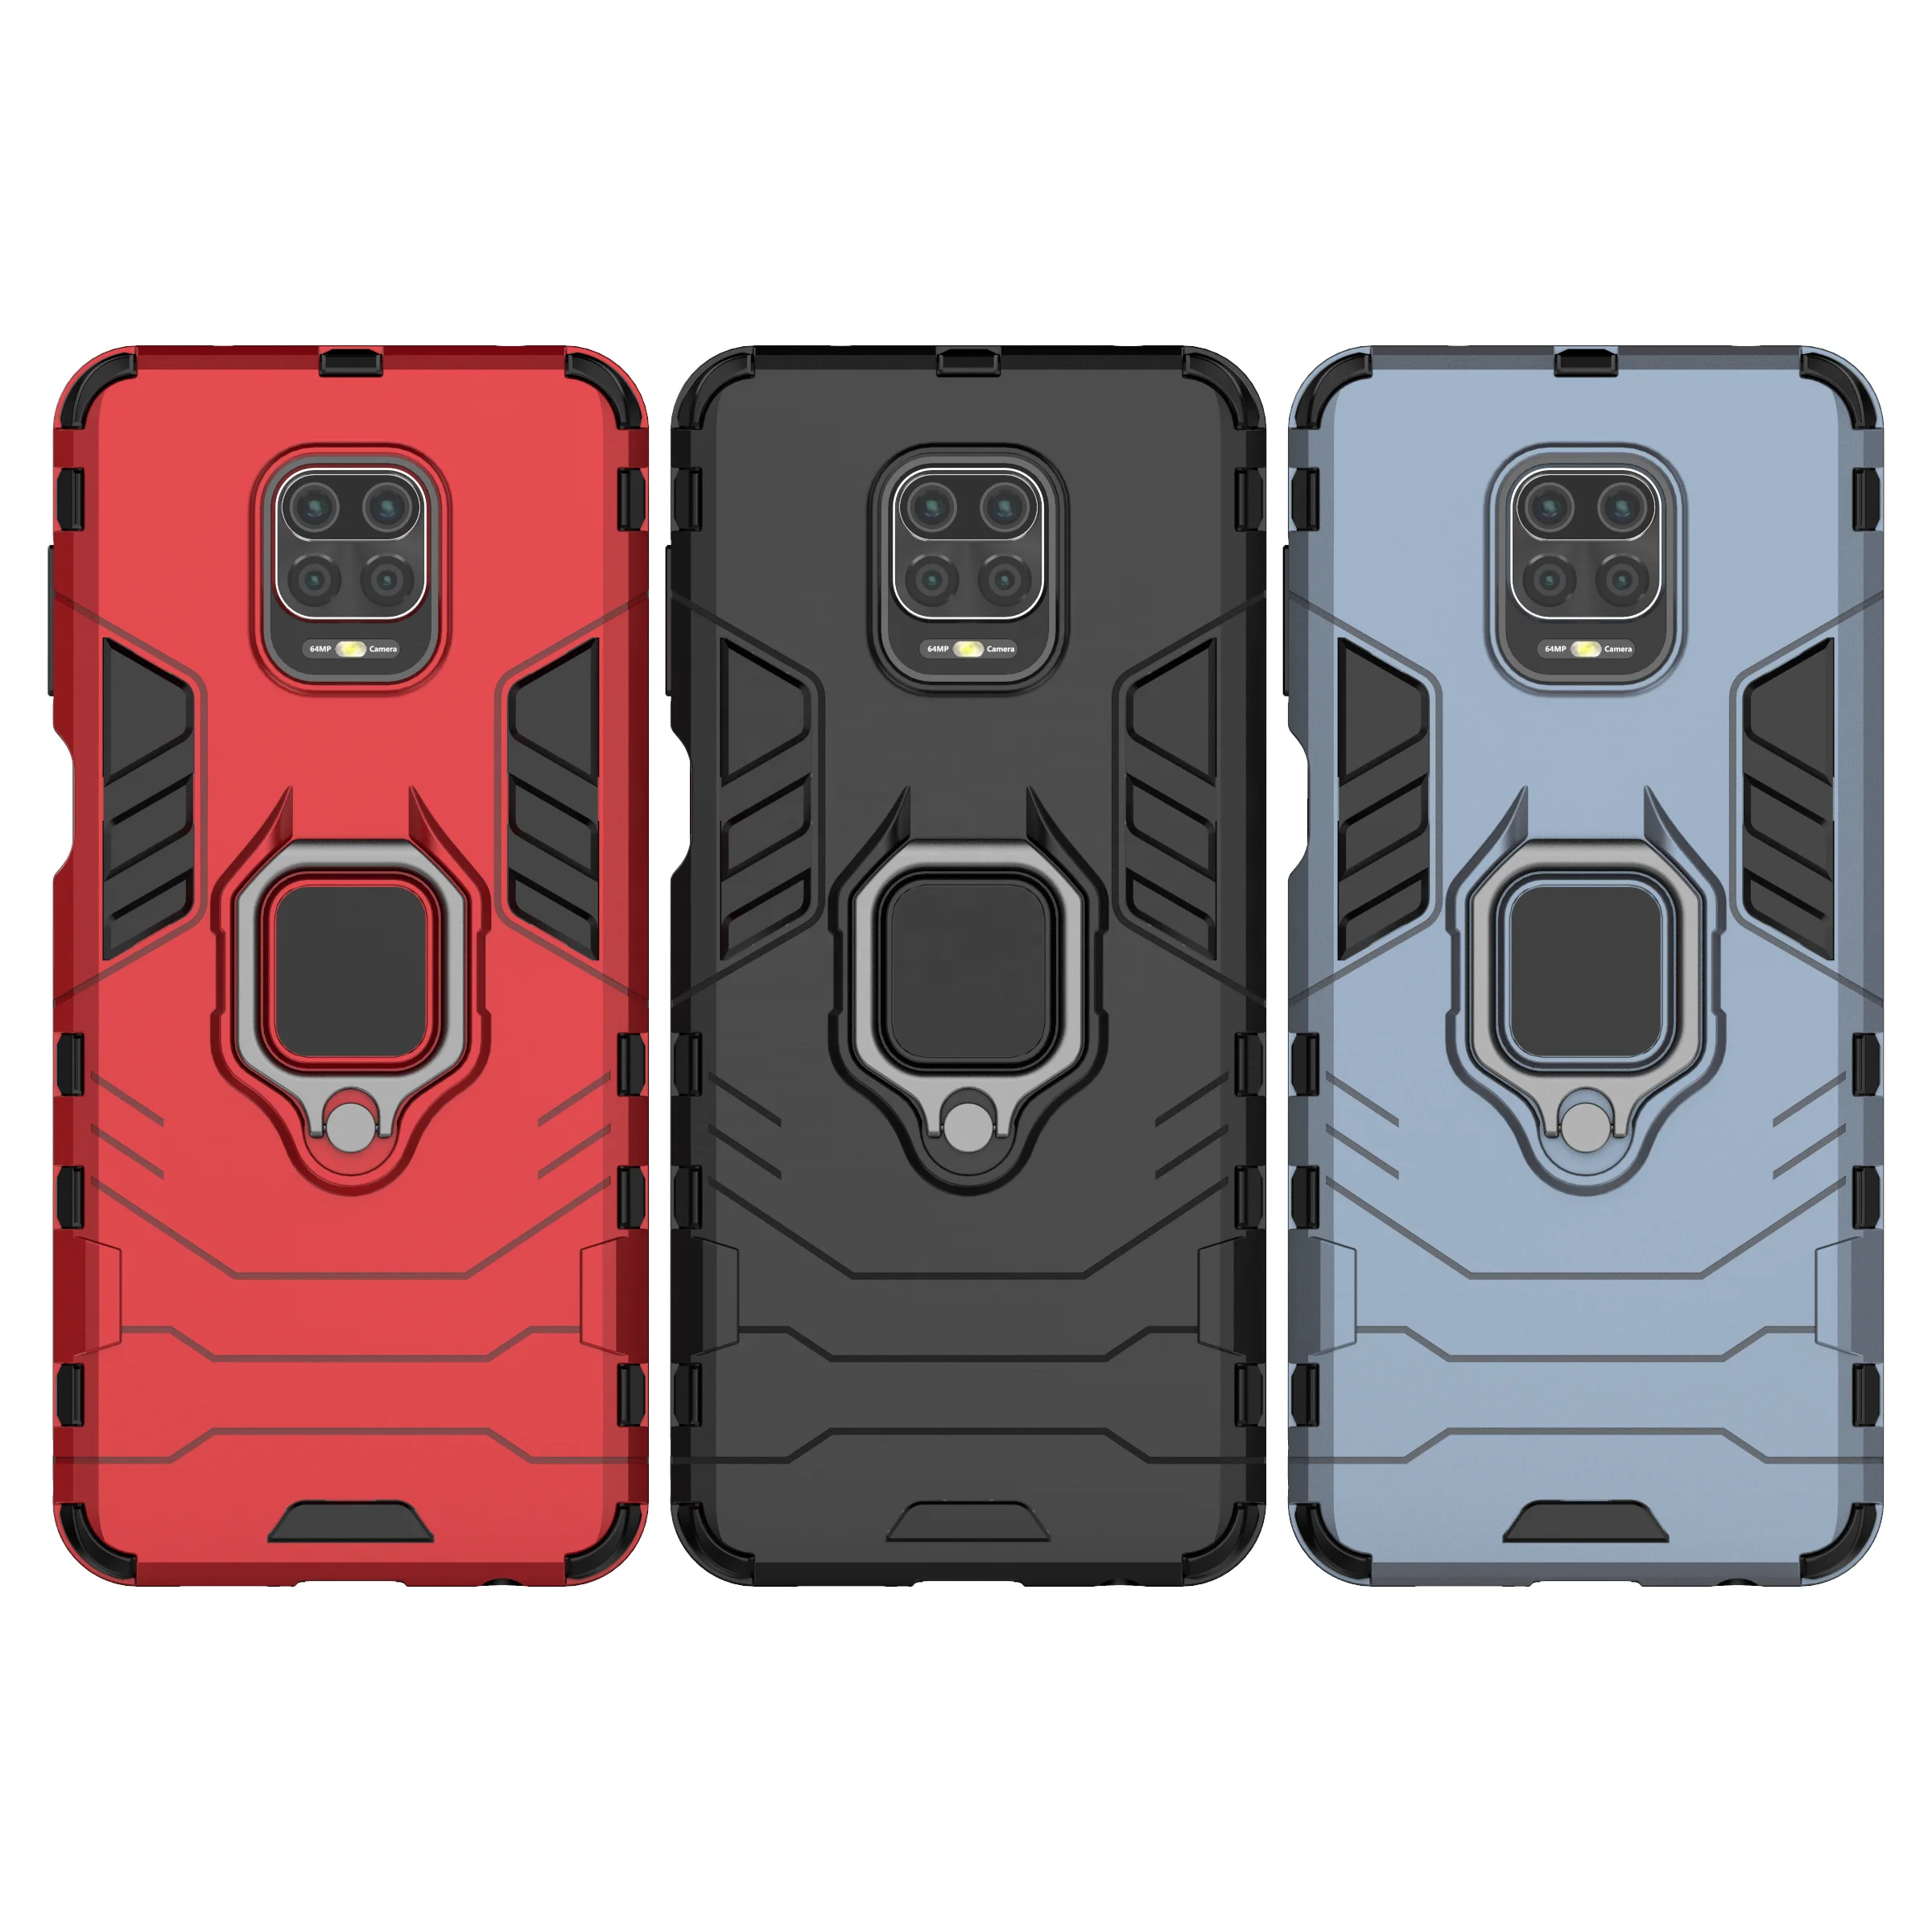 

Saiboro 360 black cover for redmi 5 plus k30 pro, cellphone hybrid back case for xiaomi mi a1 5a note 2 y2 note 9 pro max, Multi colors